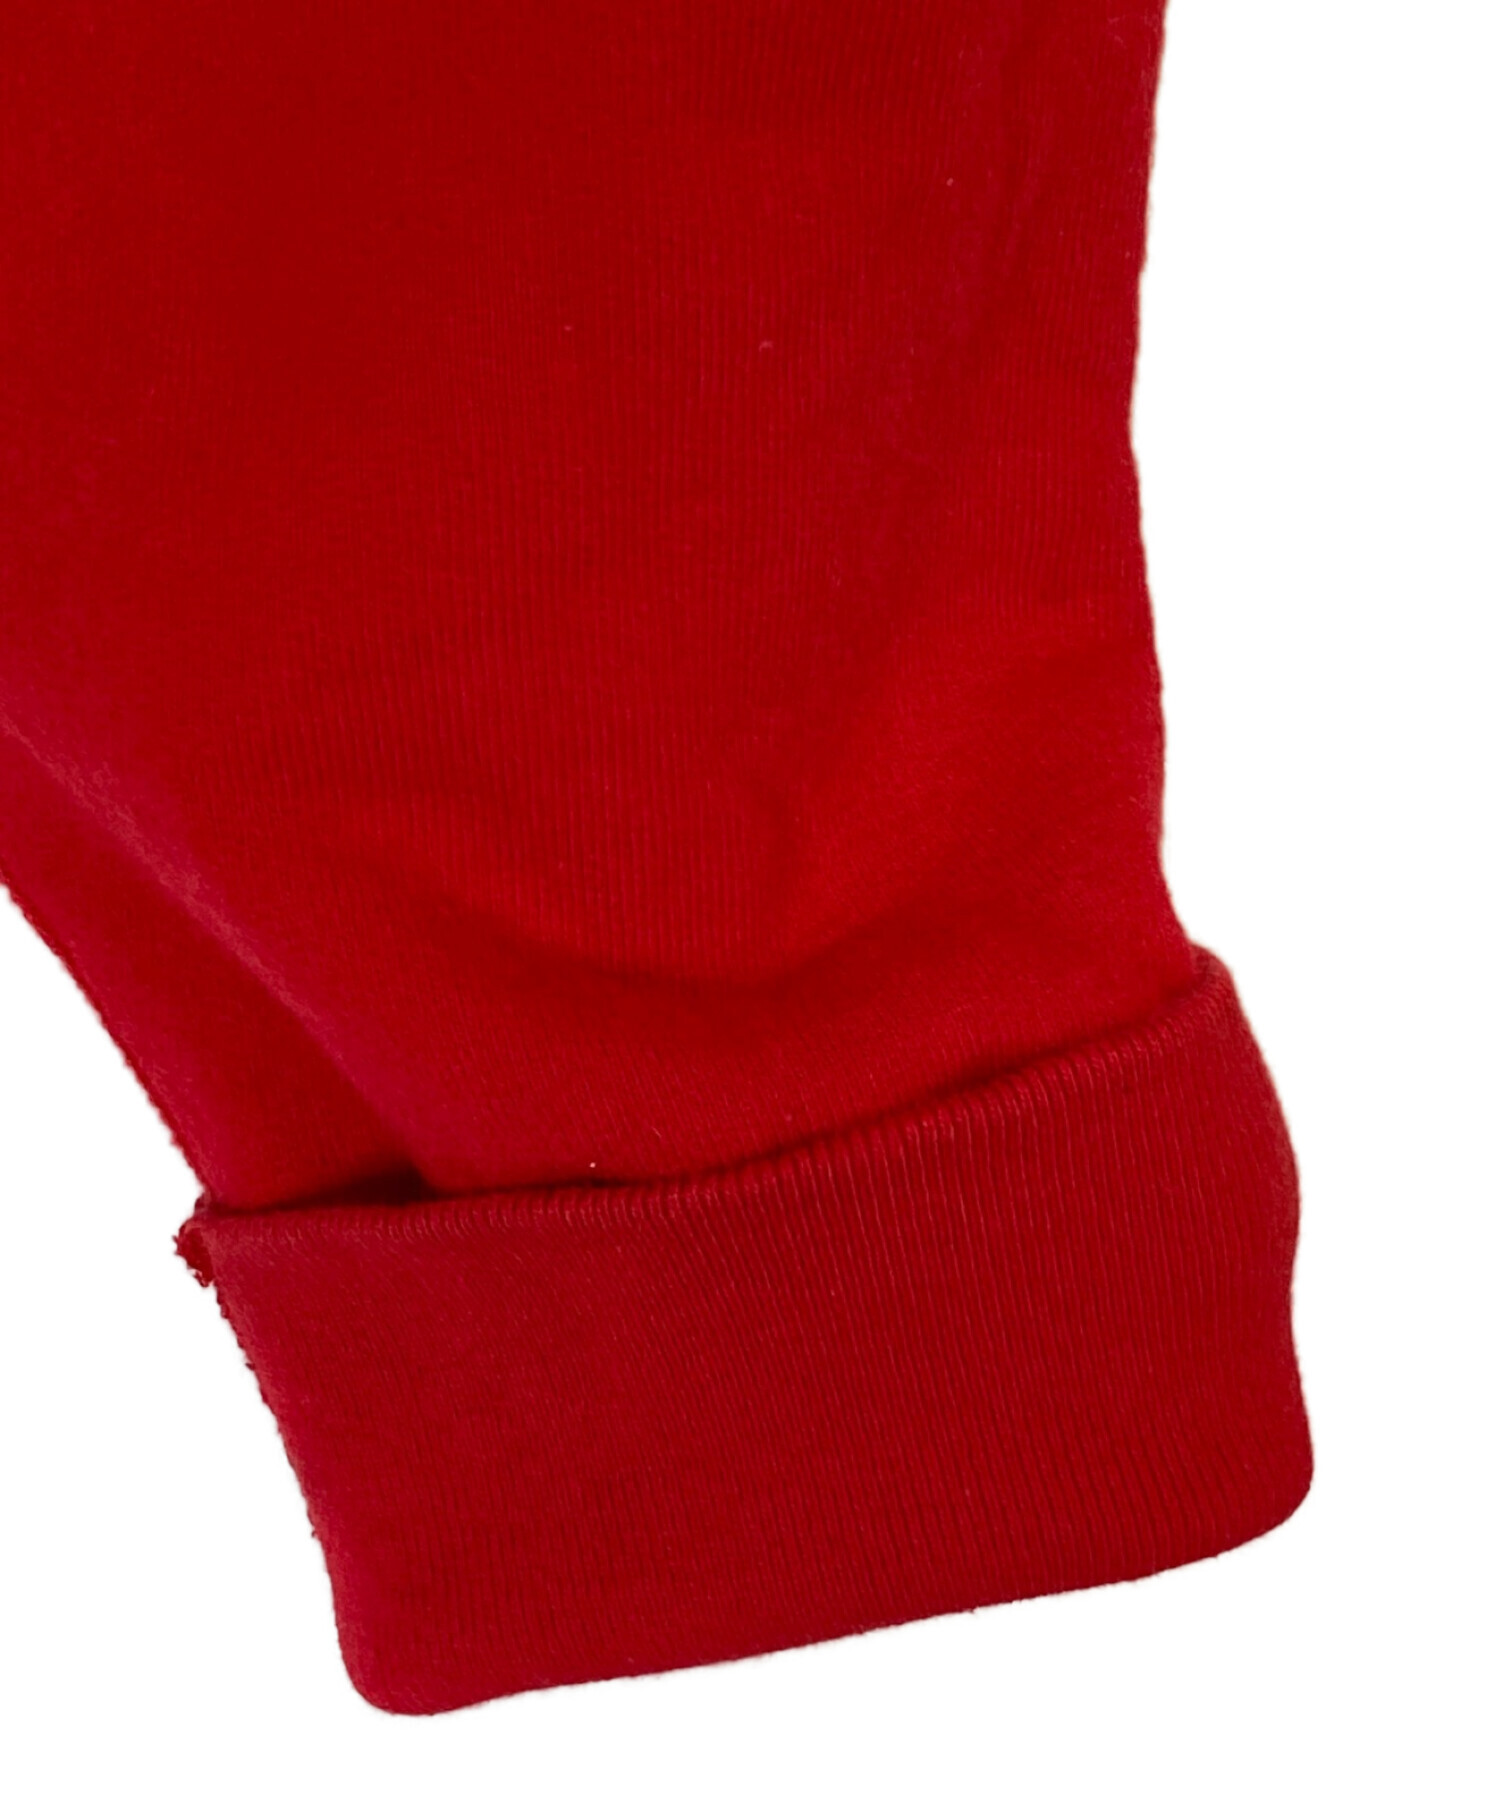 Supreme Trademark Hooded Sweatshirt Red赤